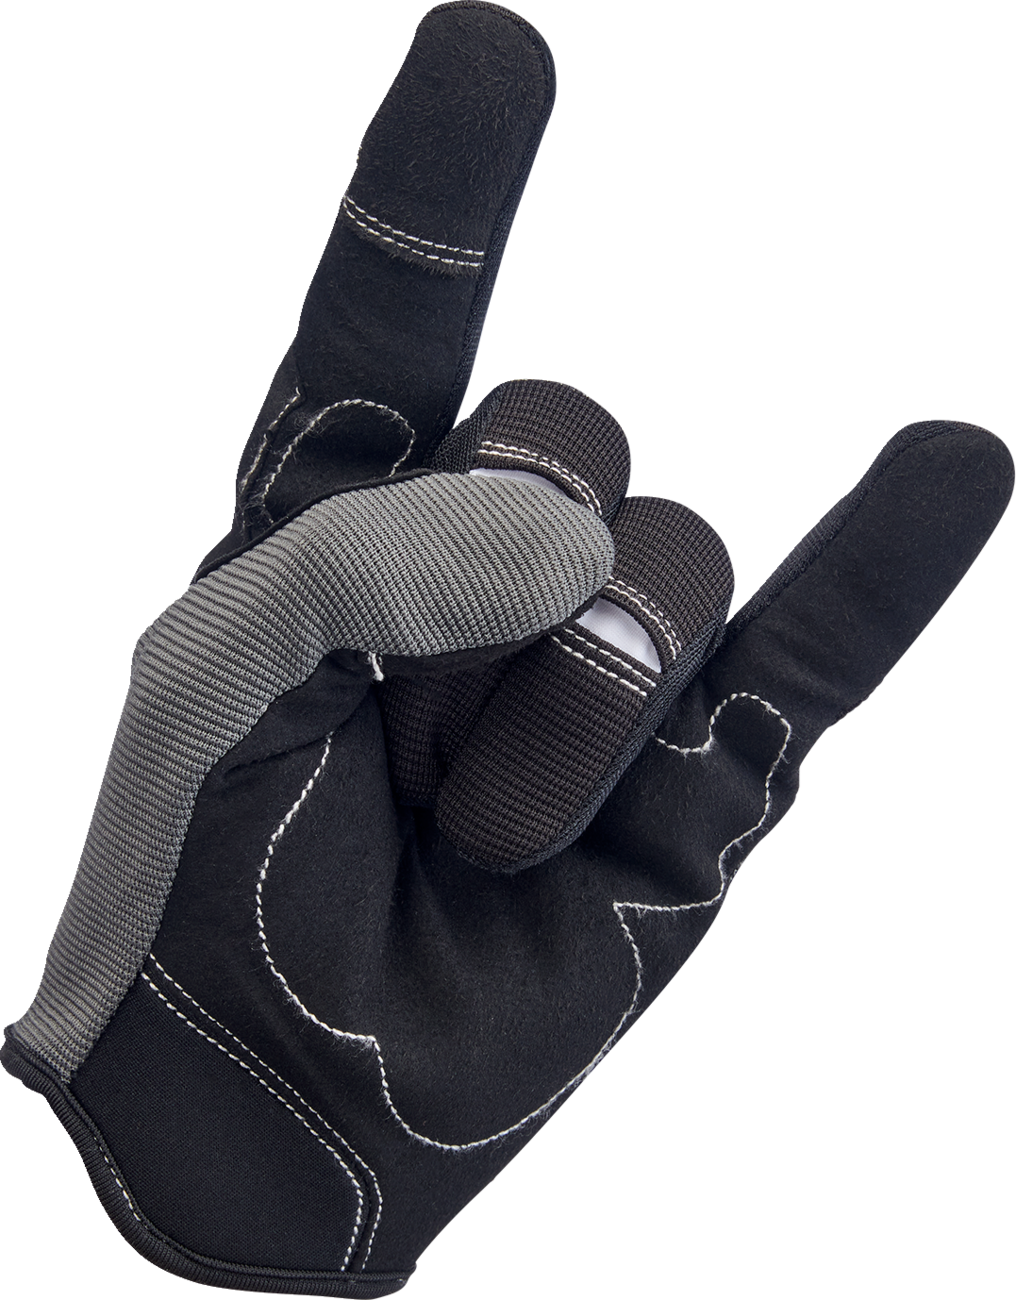 BILTWELL Moto Gloves - Gray/Black - XL 1501-1101-005